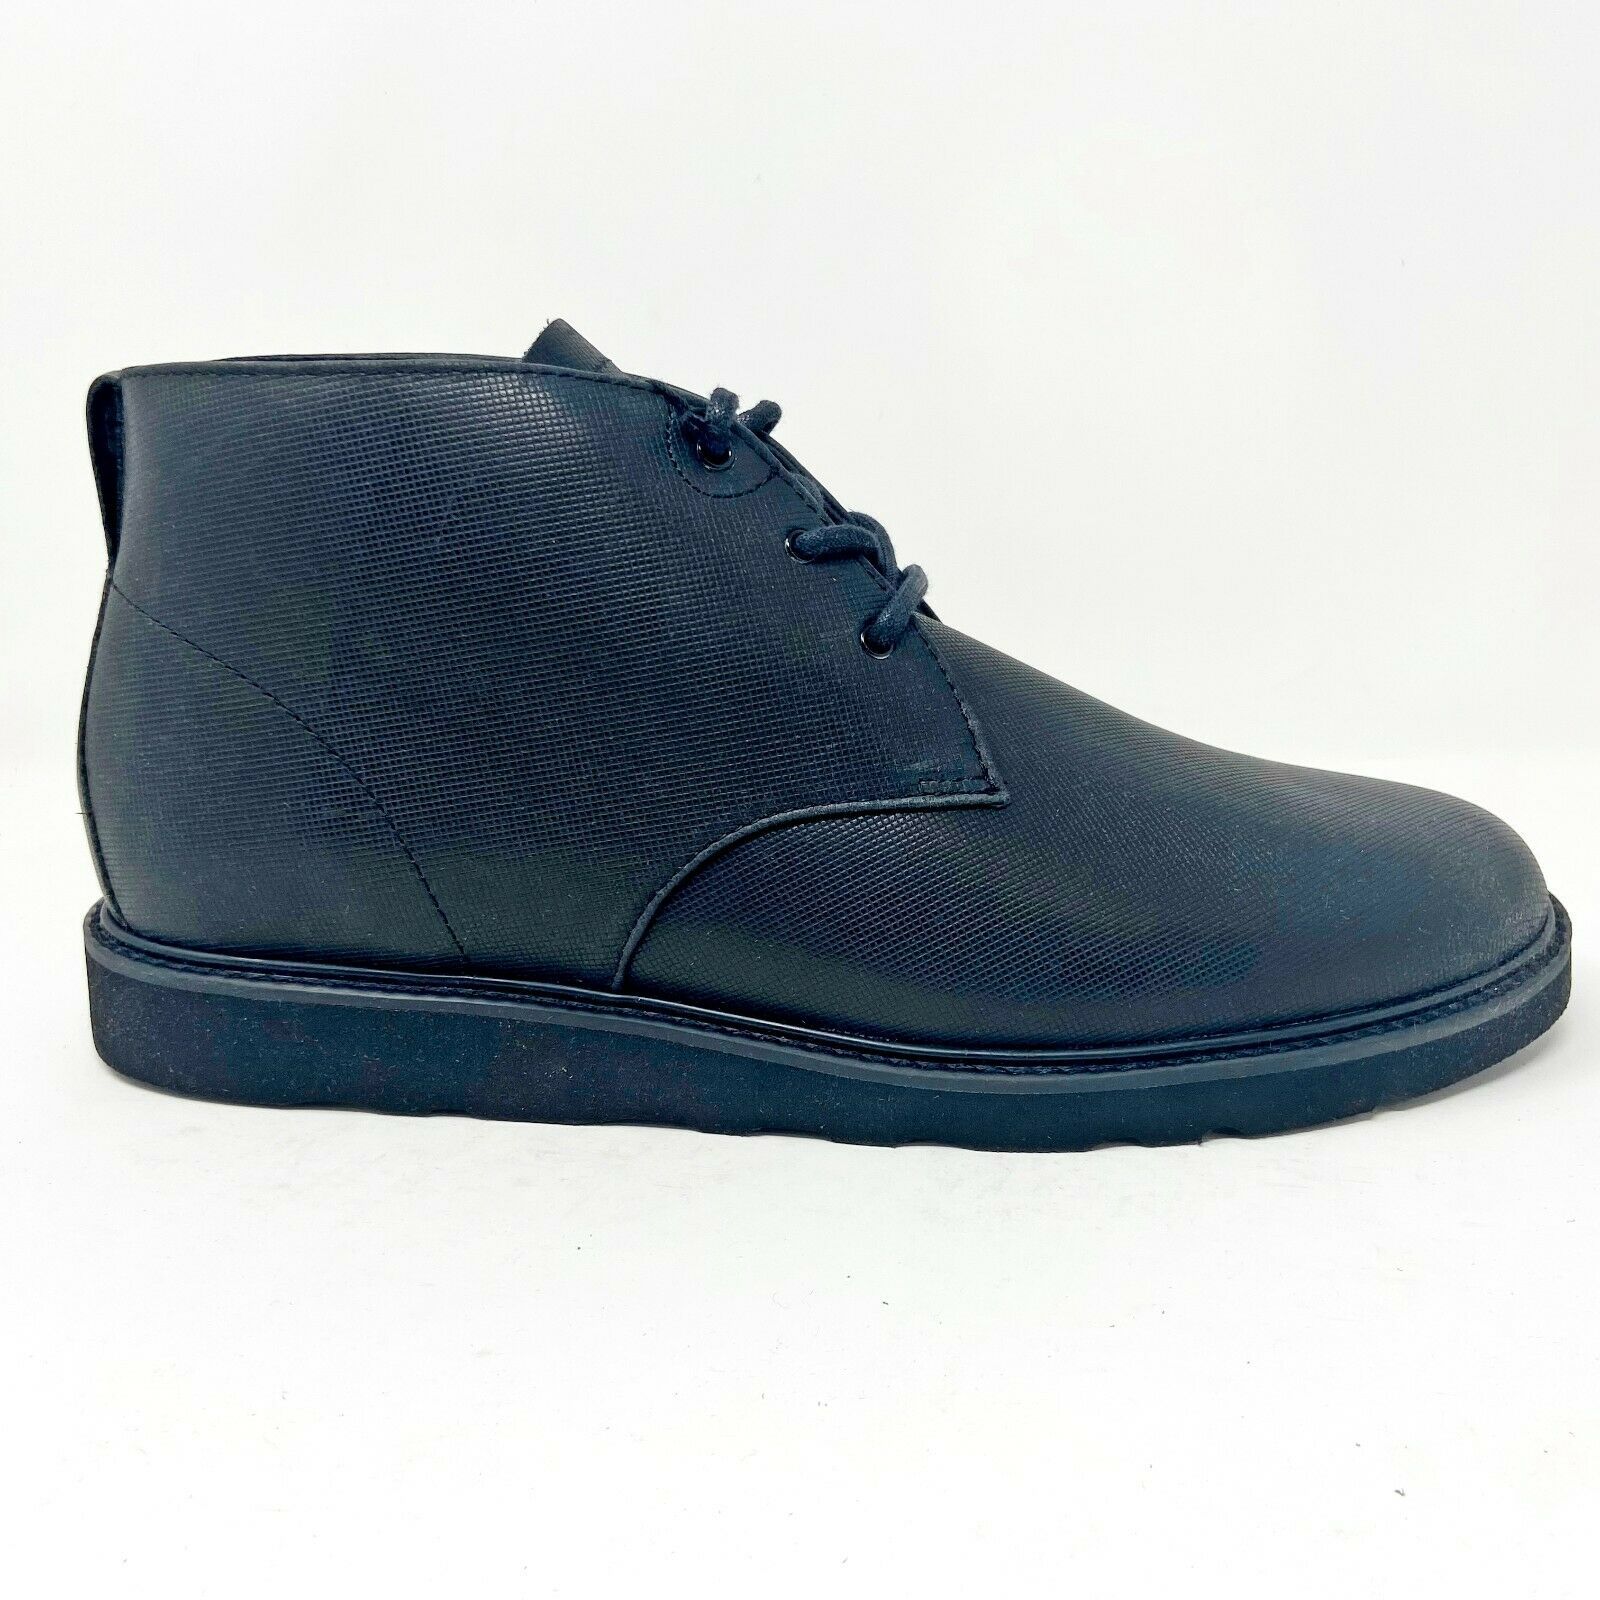 Clae Strayhorn Vibram Black Debossed Leather Mens Casual Sneakers